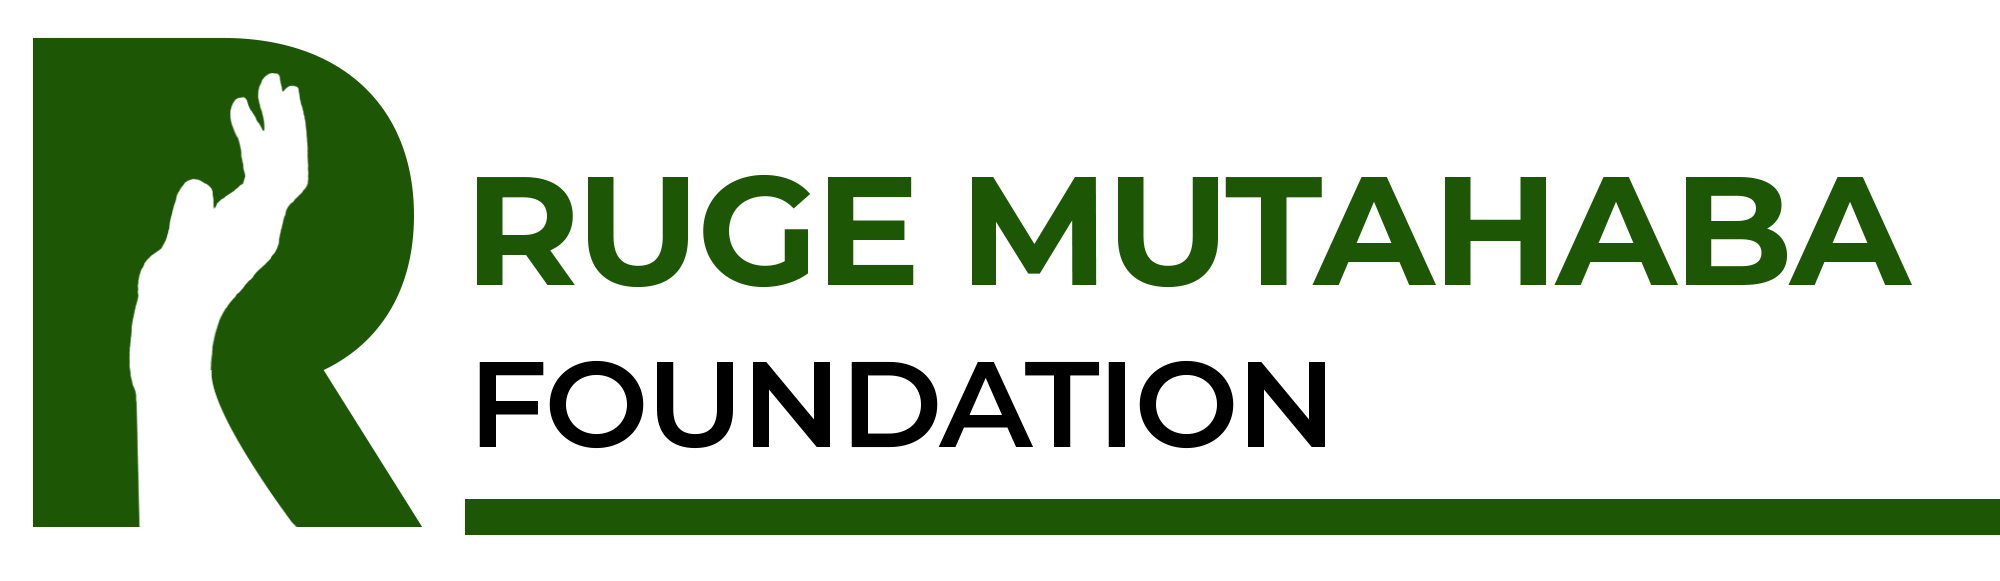 Ruge Mutahaba Foundation